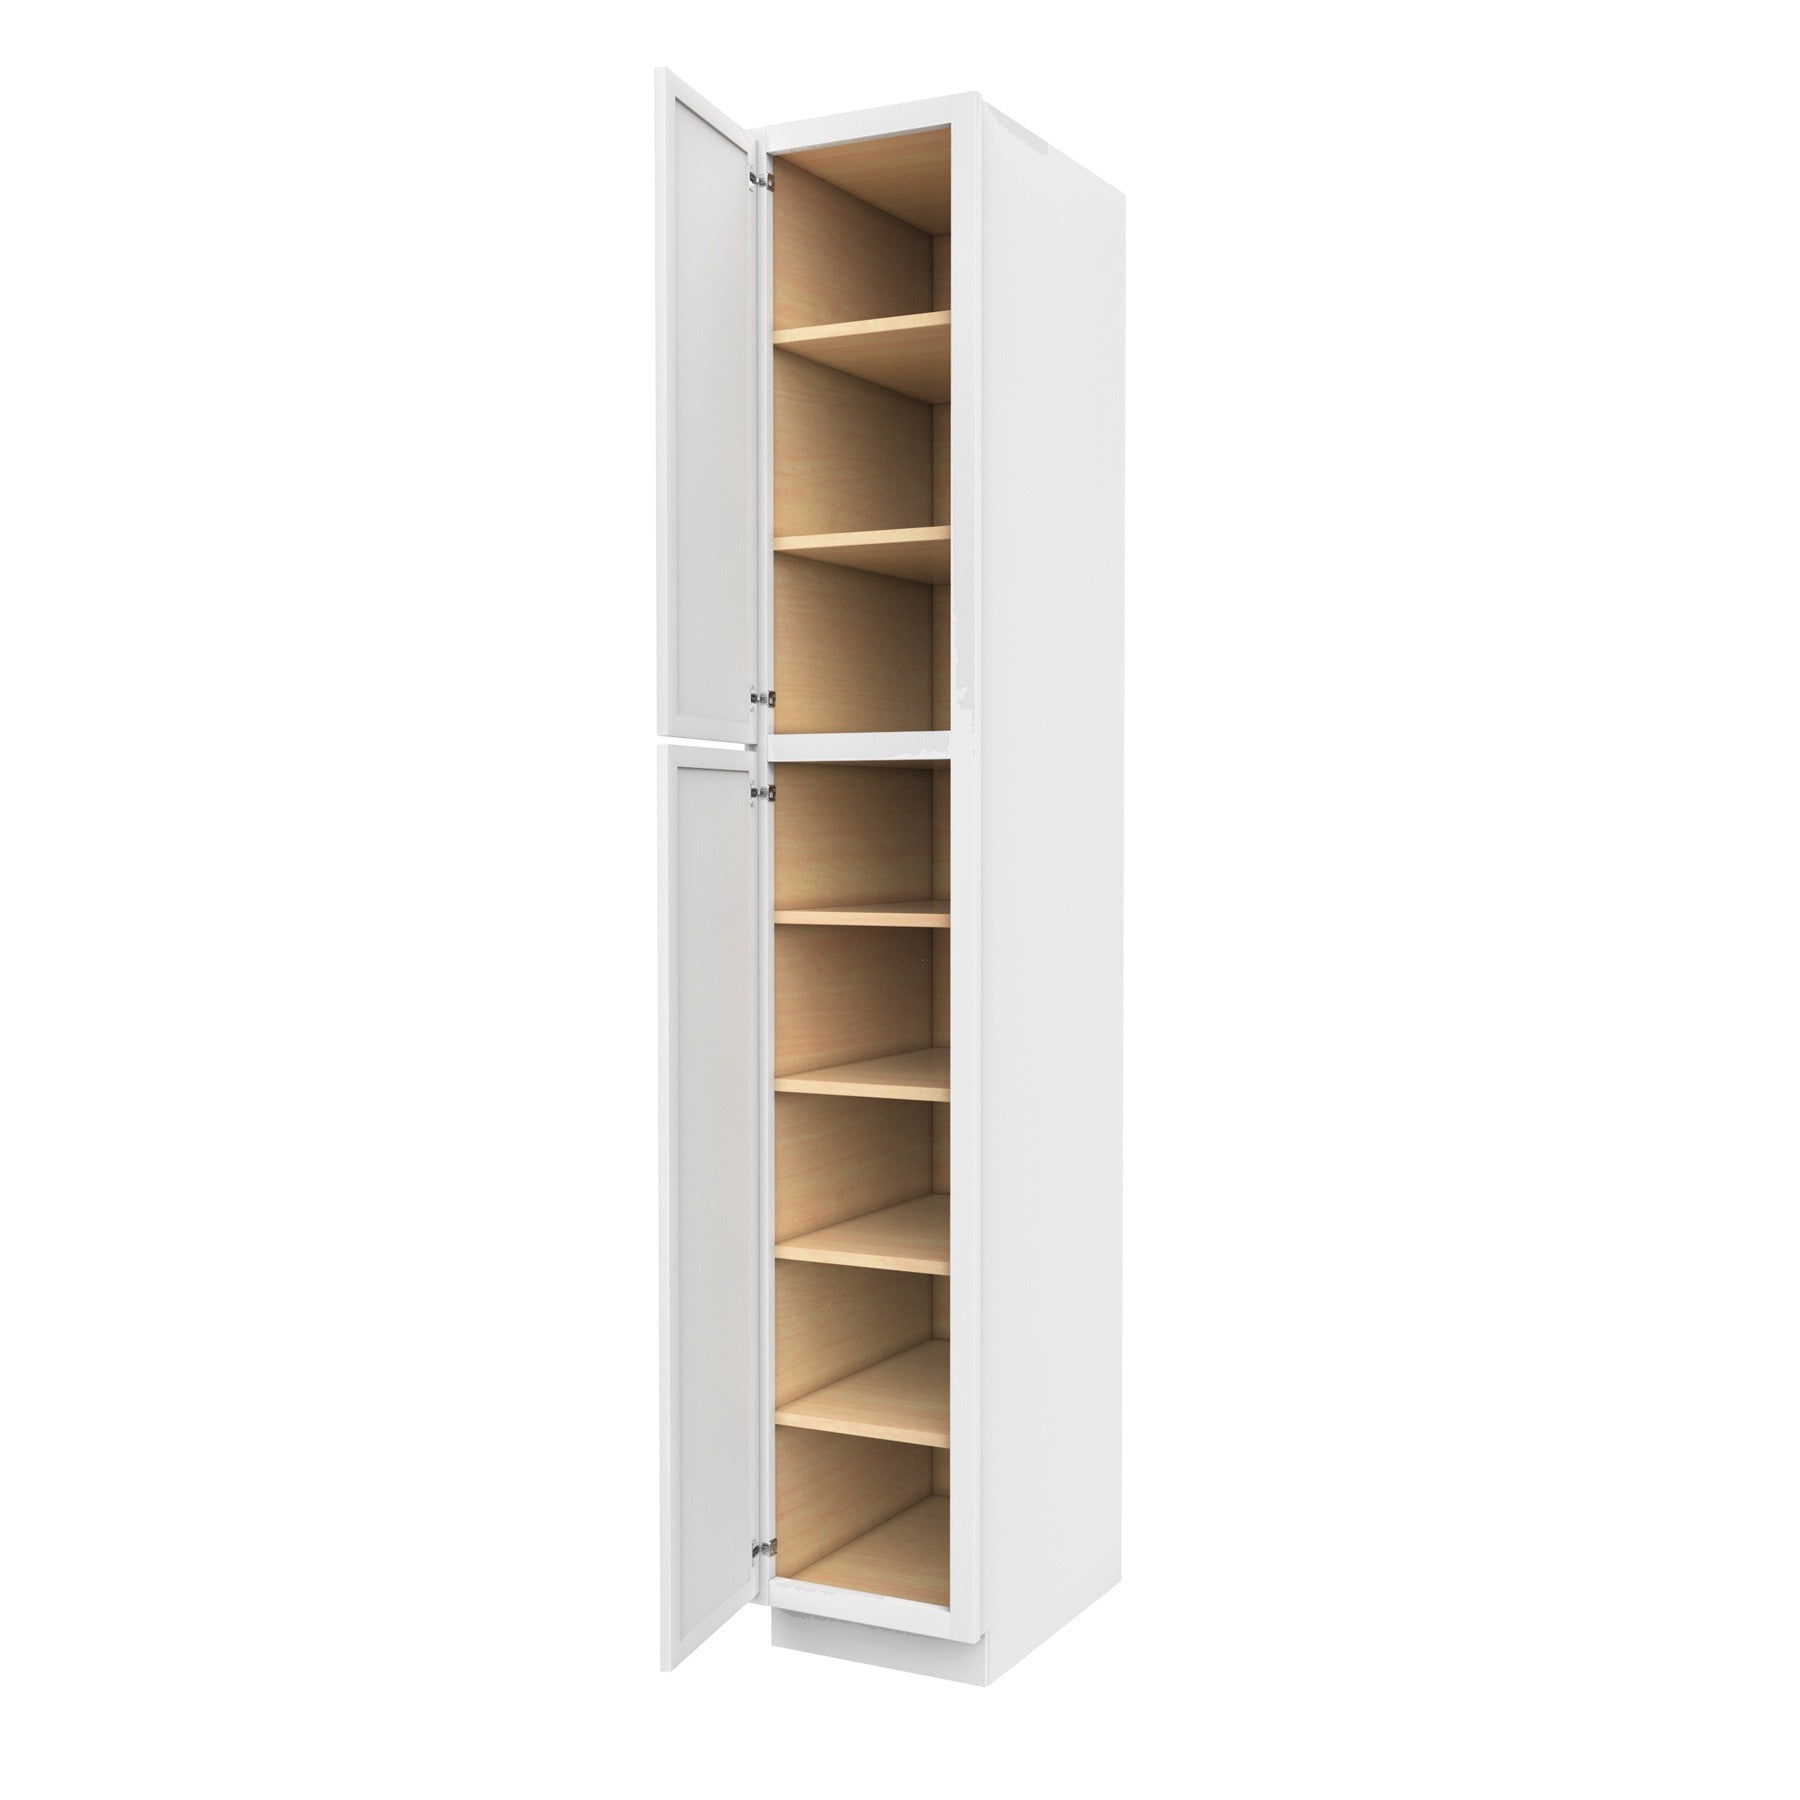 Fashion White - Utility Cabinet | 15"W x 90"H x 24"D